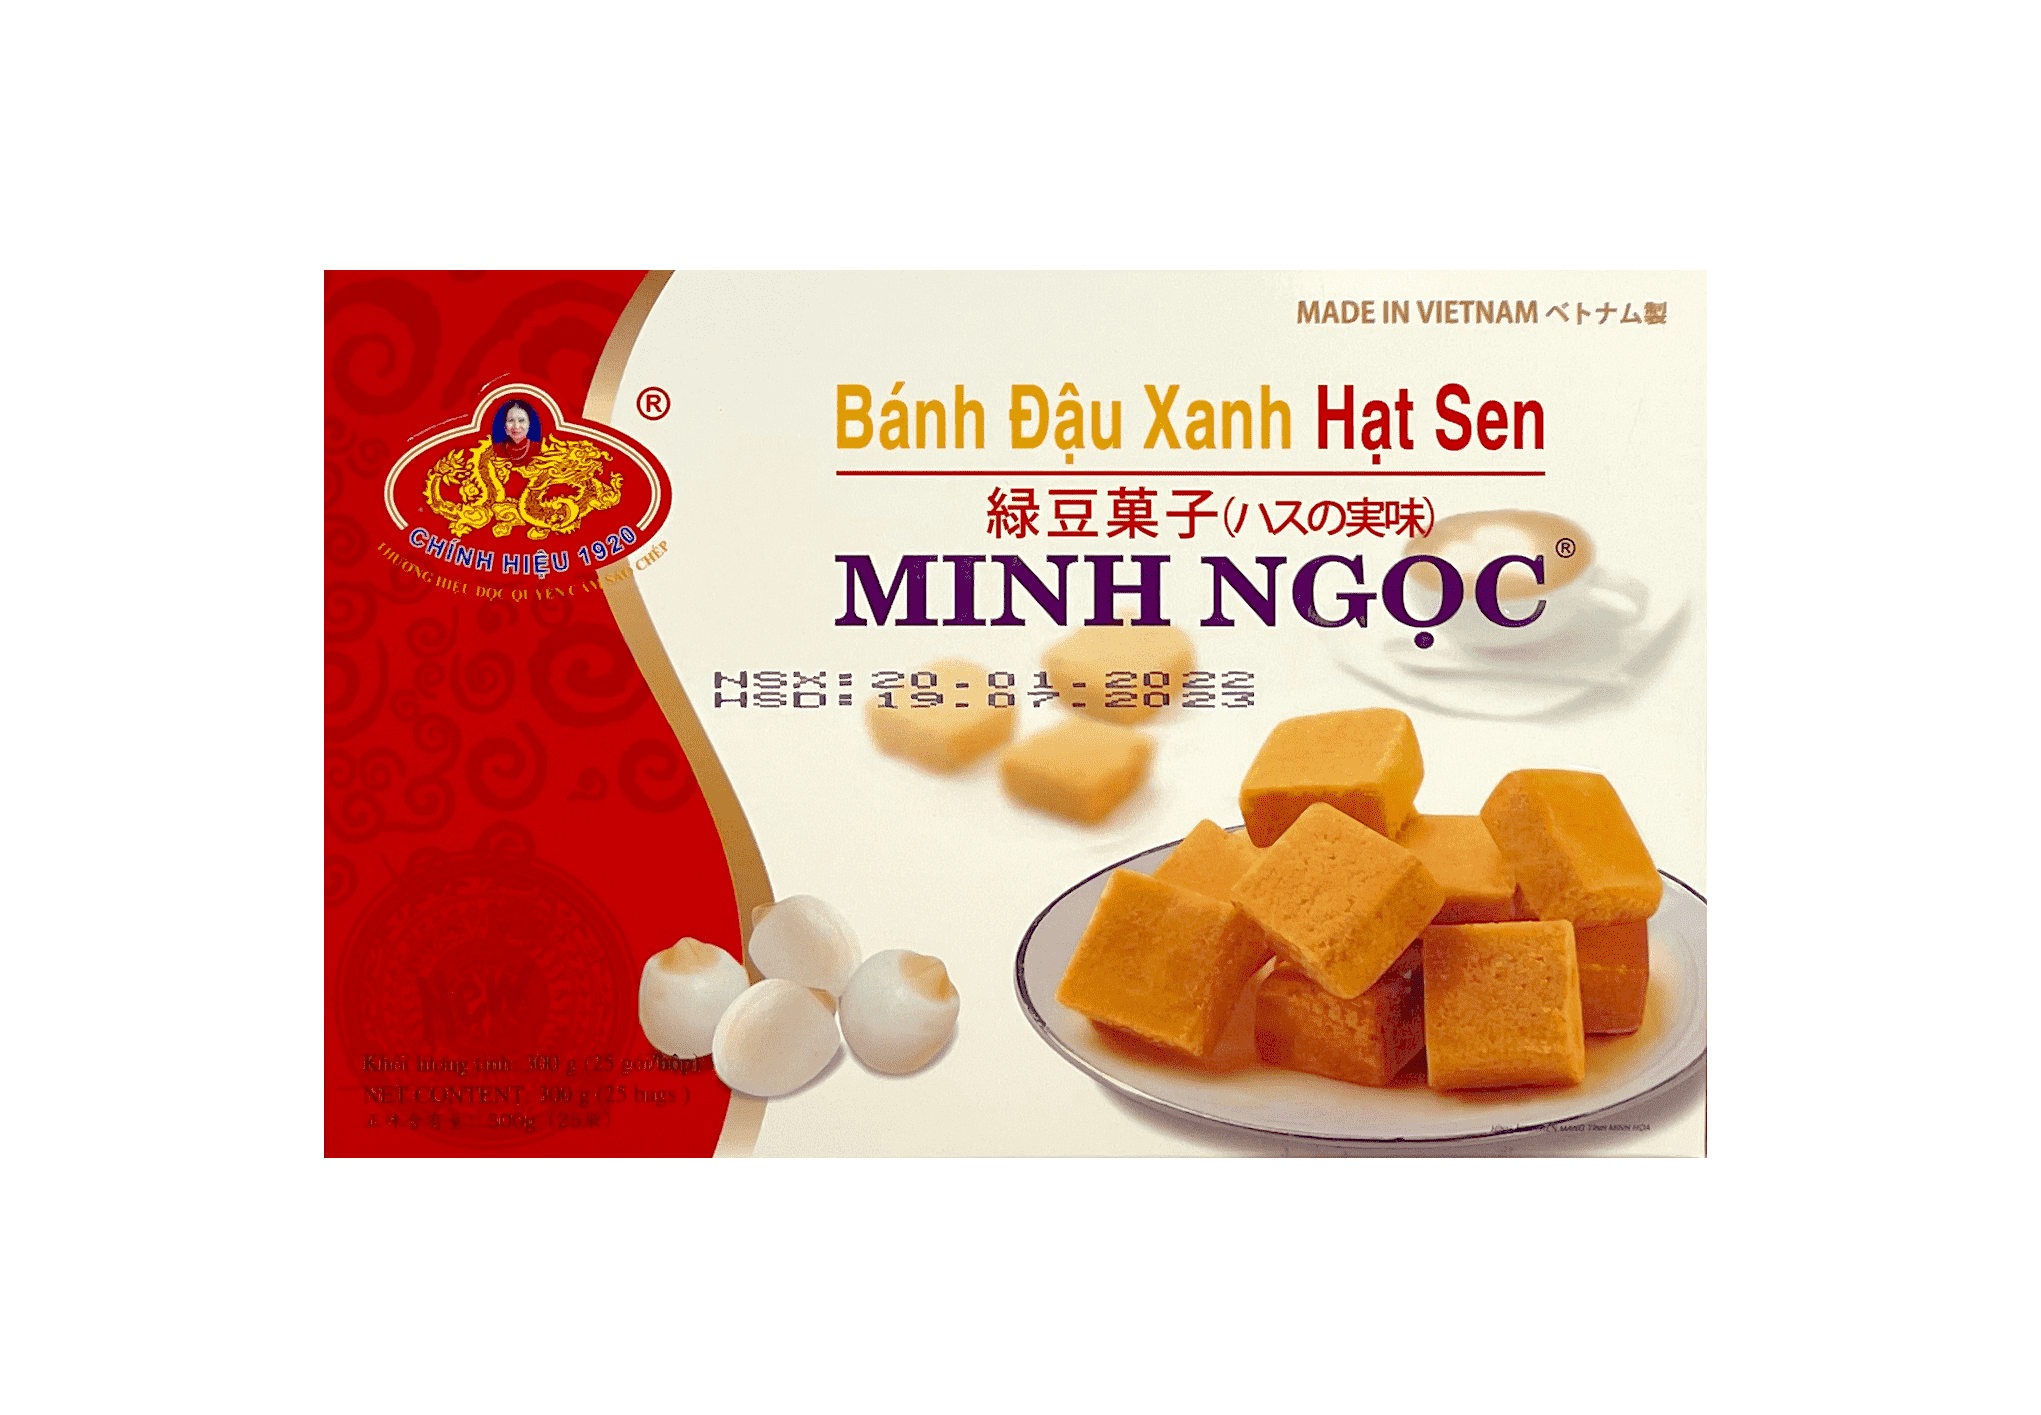 绿豆菓子 300g Minh Ngoc 越南